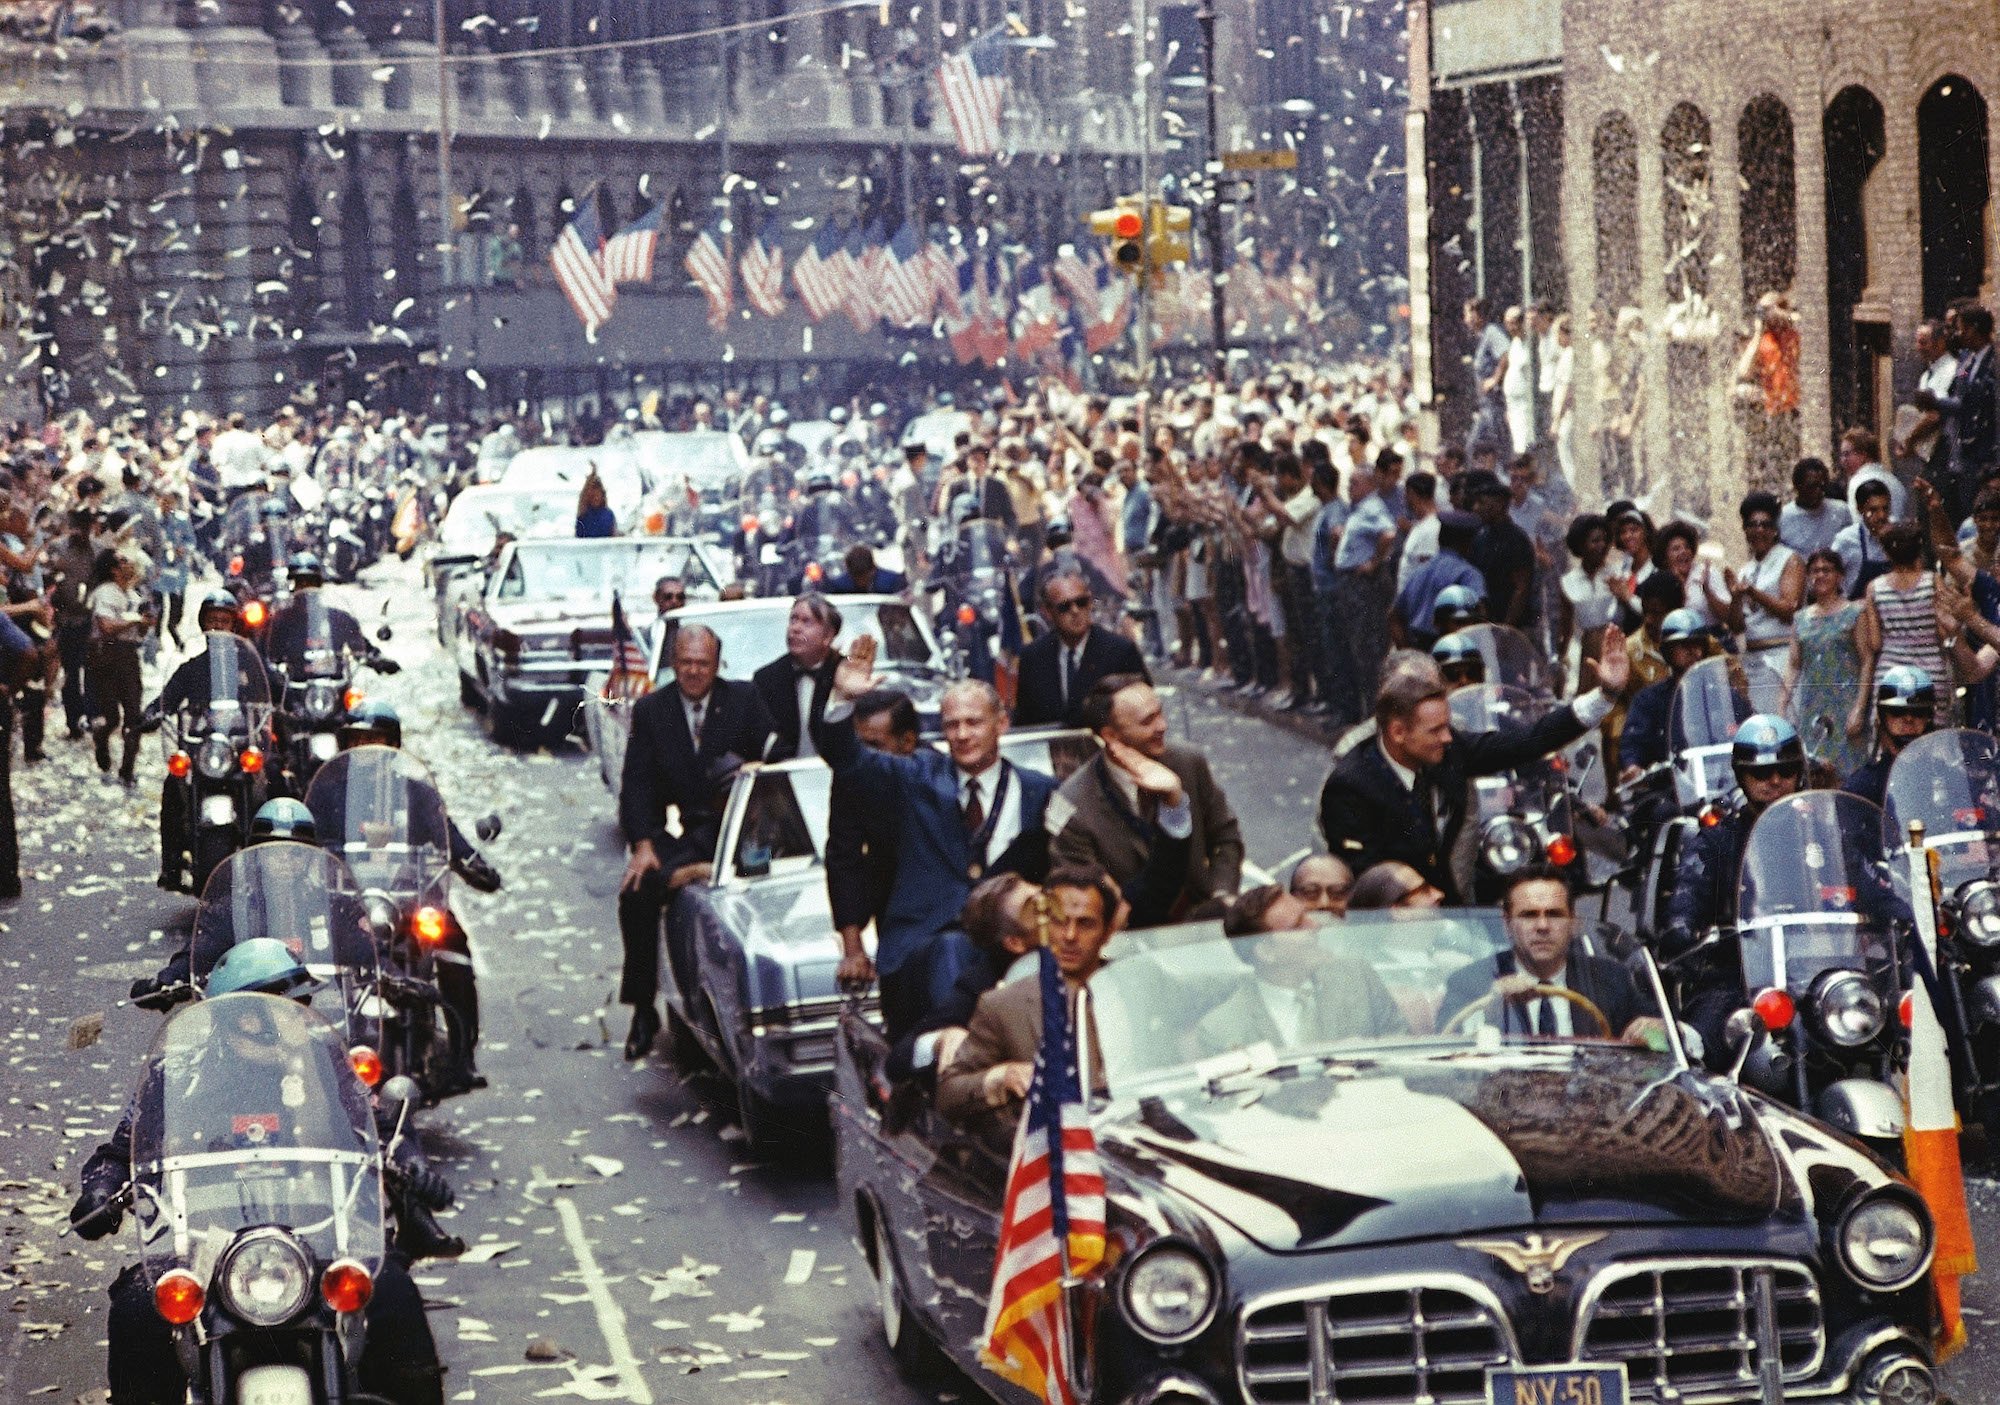 New York City welcomes the Apollo 11 crew